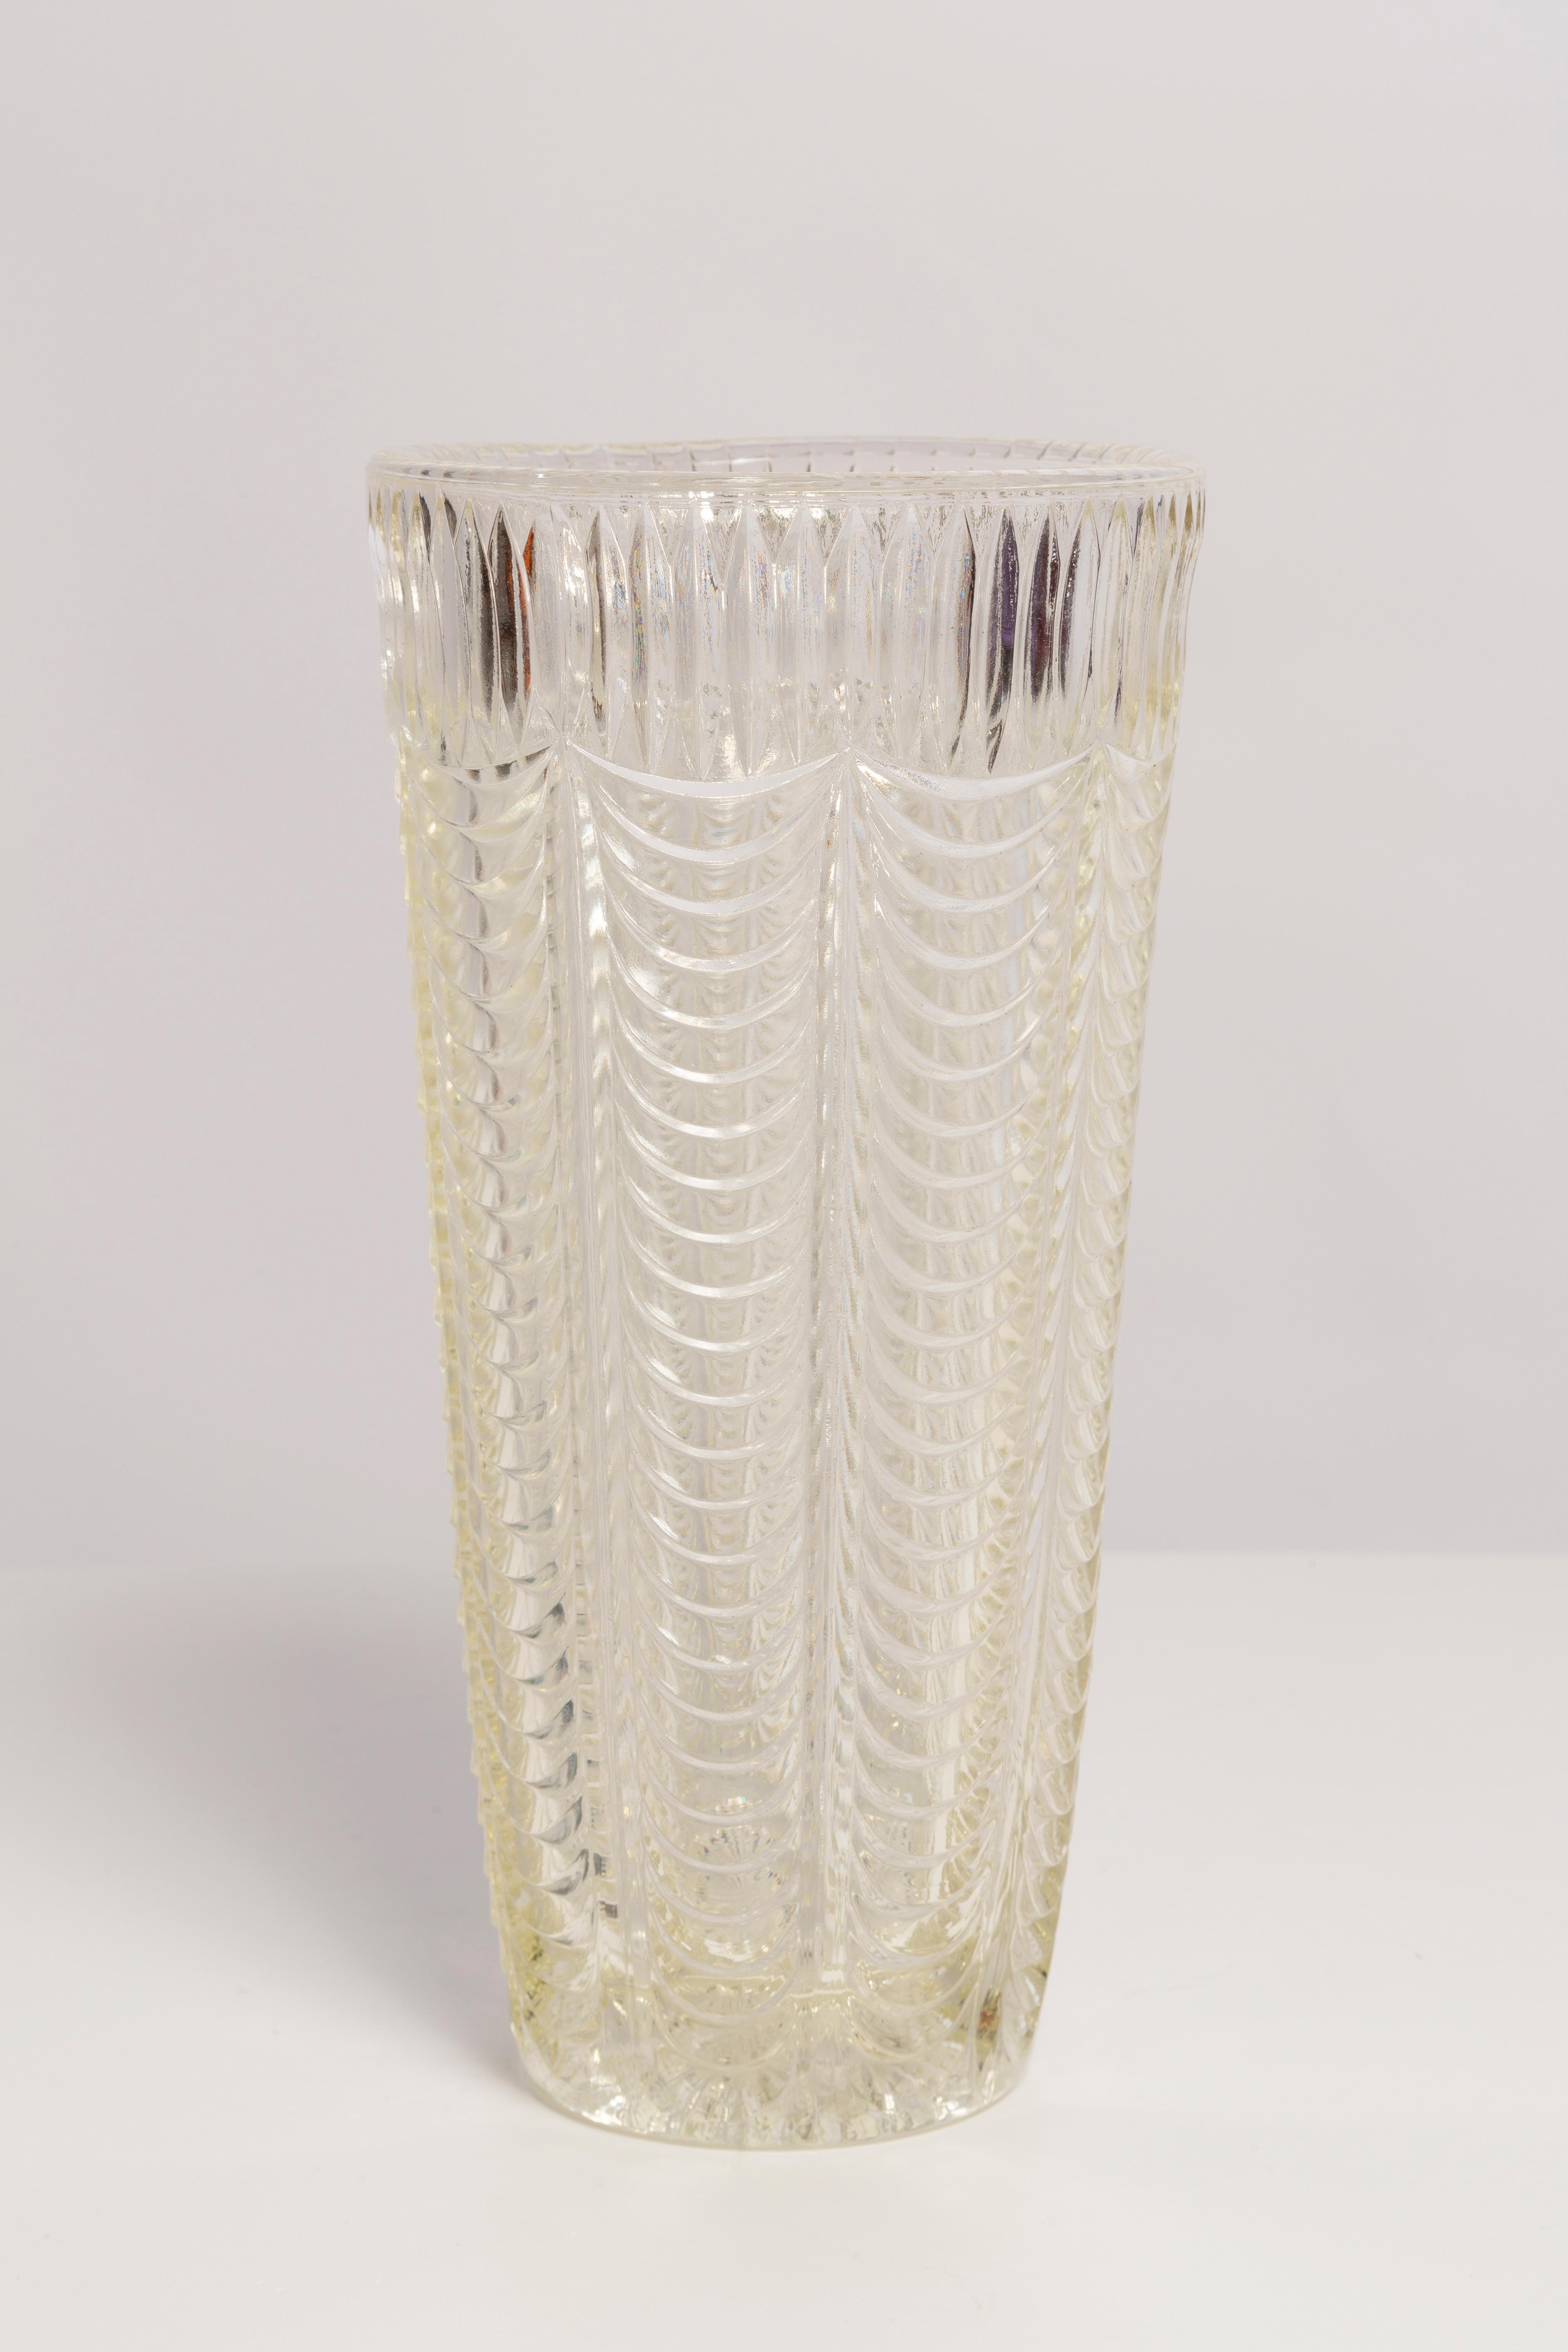 Vase transparent en très bon état. Produit dans les années 1960.
Verre en parfait état. Le vase semble avoir été sorti de sa boîte.

Pas d'accrocs, de défauts, etc. La surface extérieure en relief, l'intérieur lisse. 
Vase en verre épais,